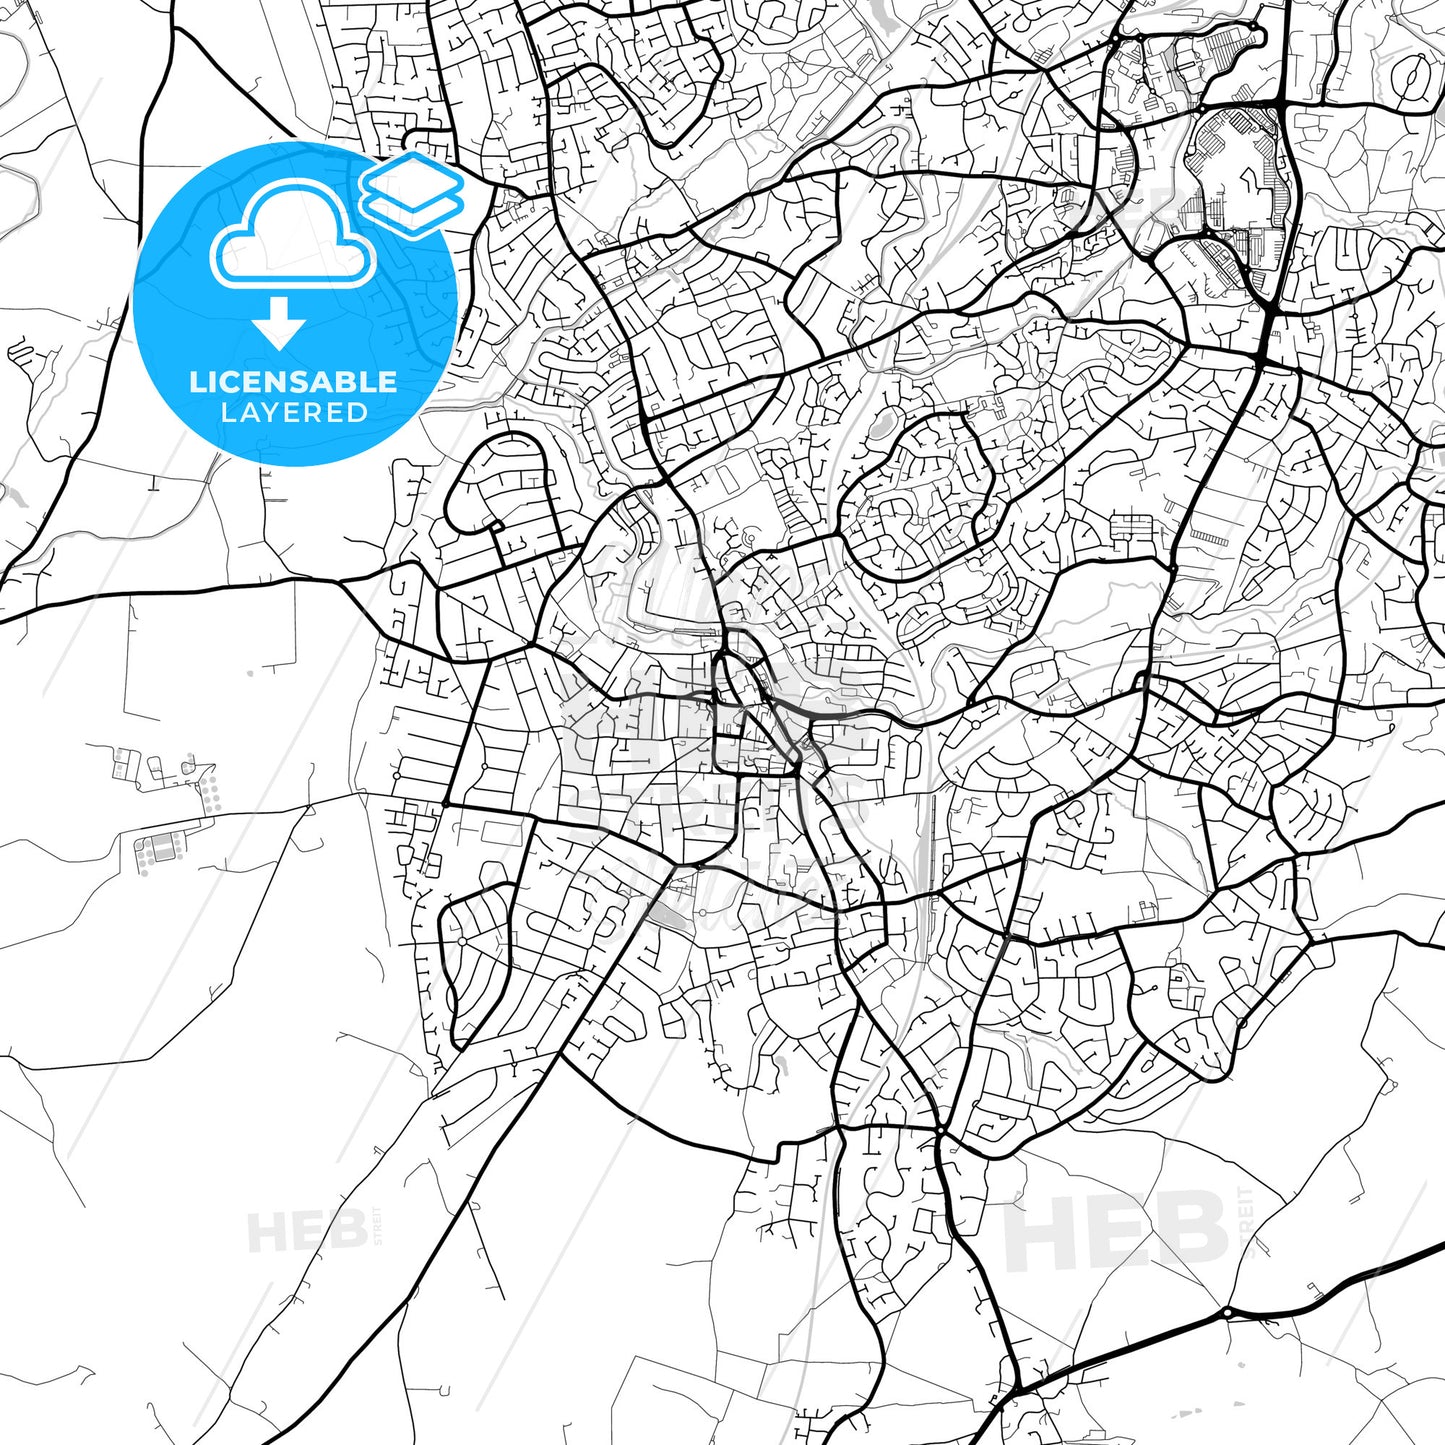 Layered PDF map of Stourbridge, West Midlands, England